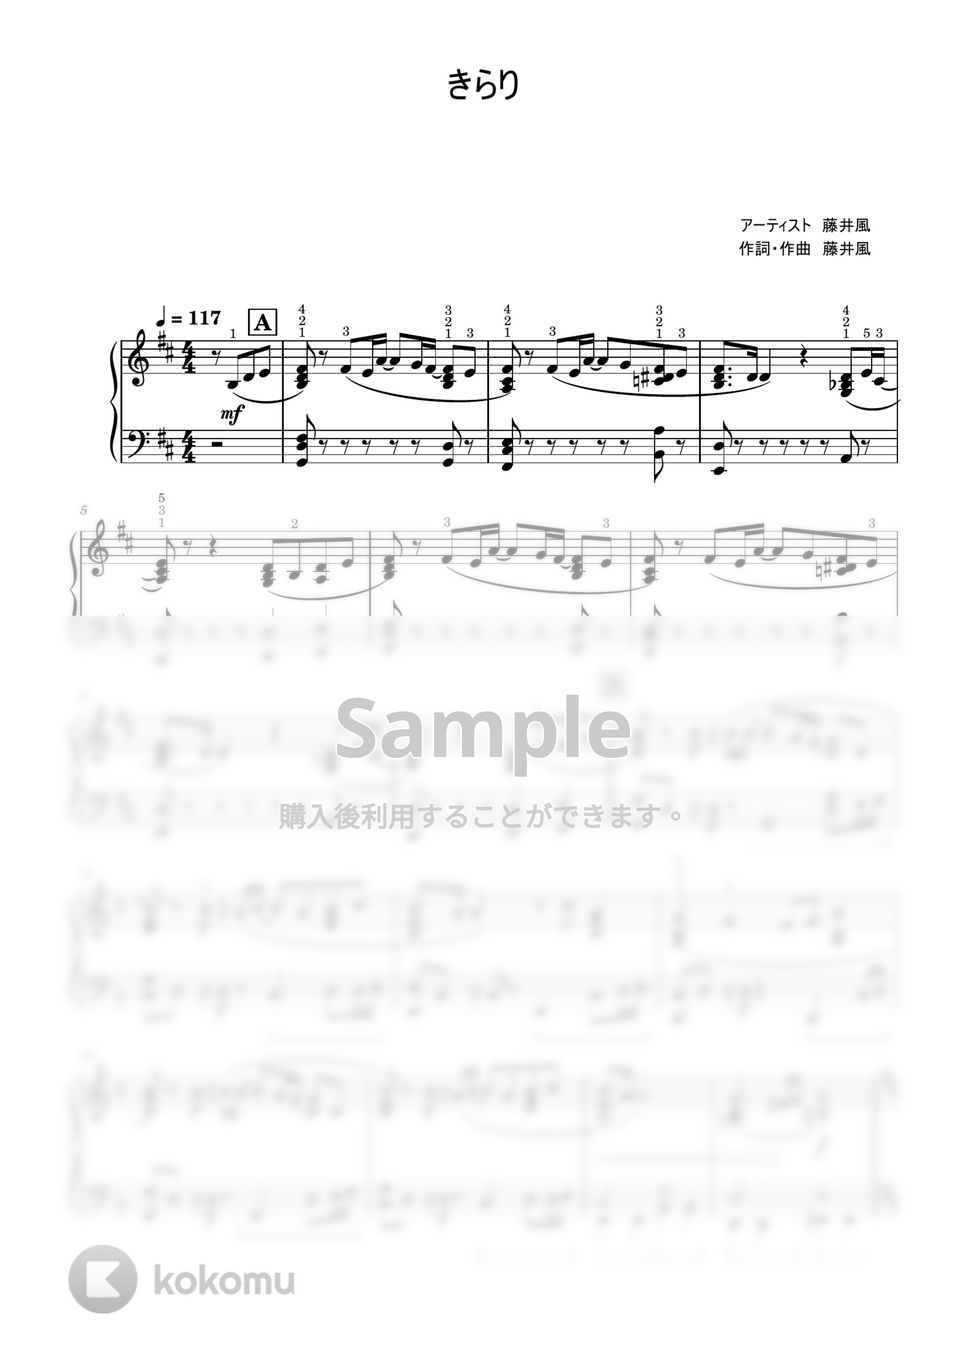 藤井風 - きらり (上級レベル) by Saori8Piano